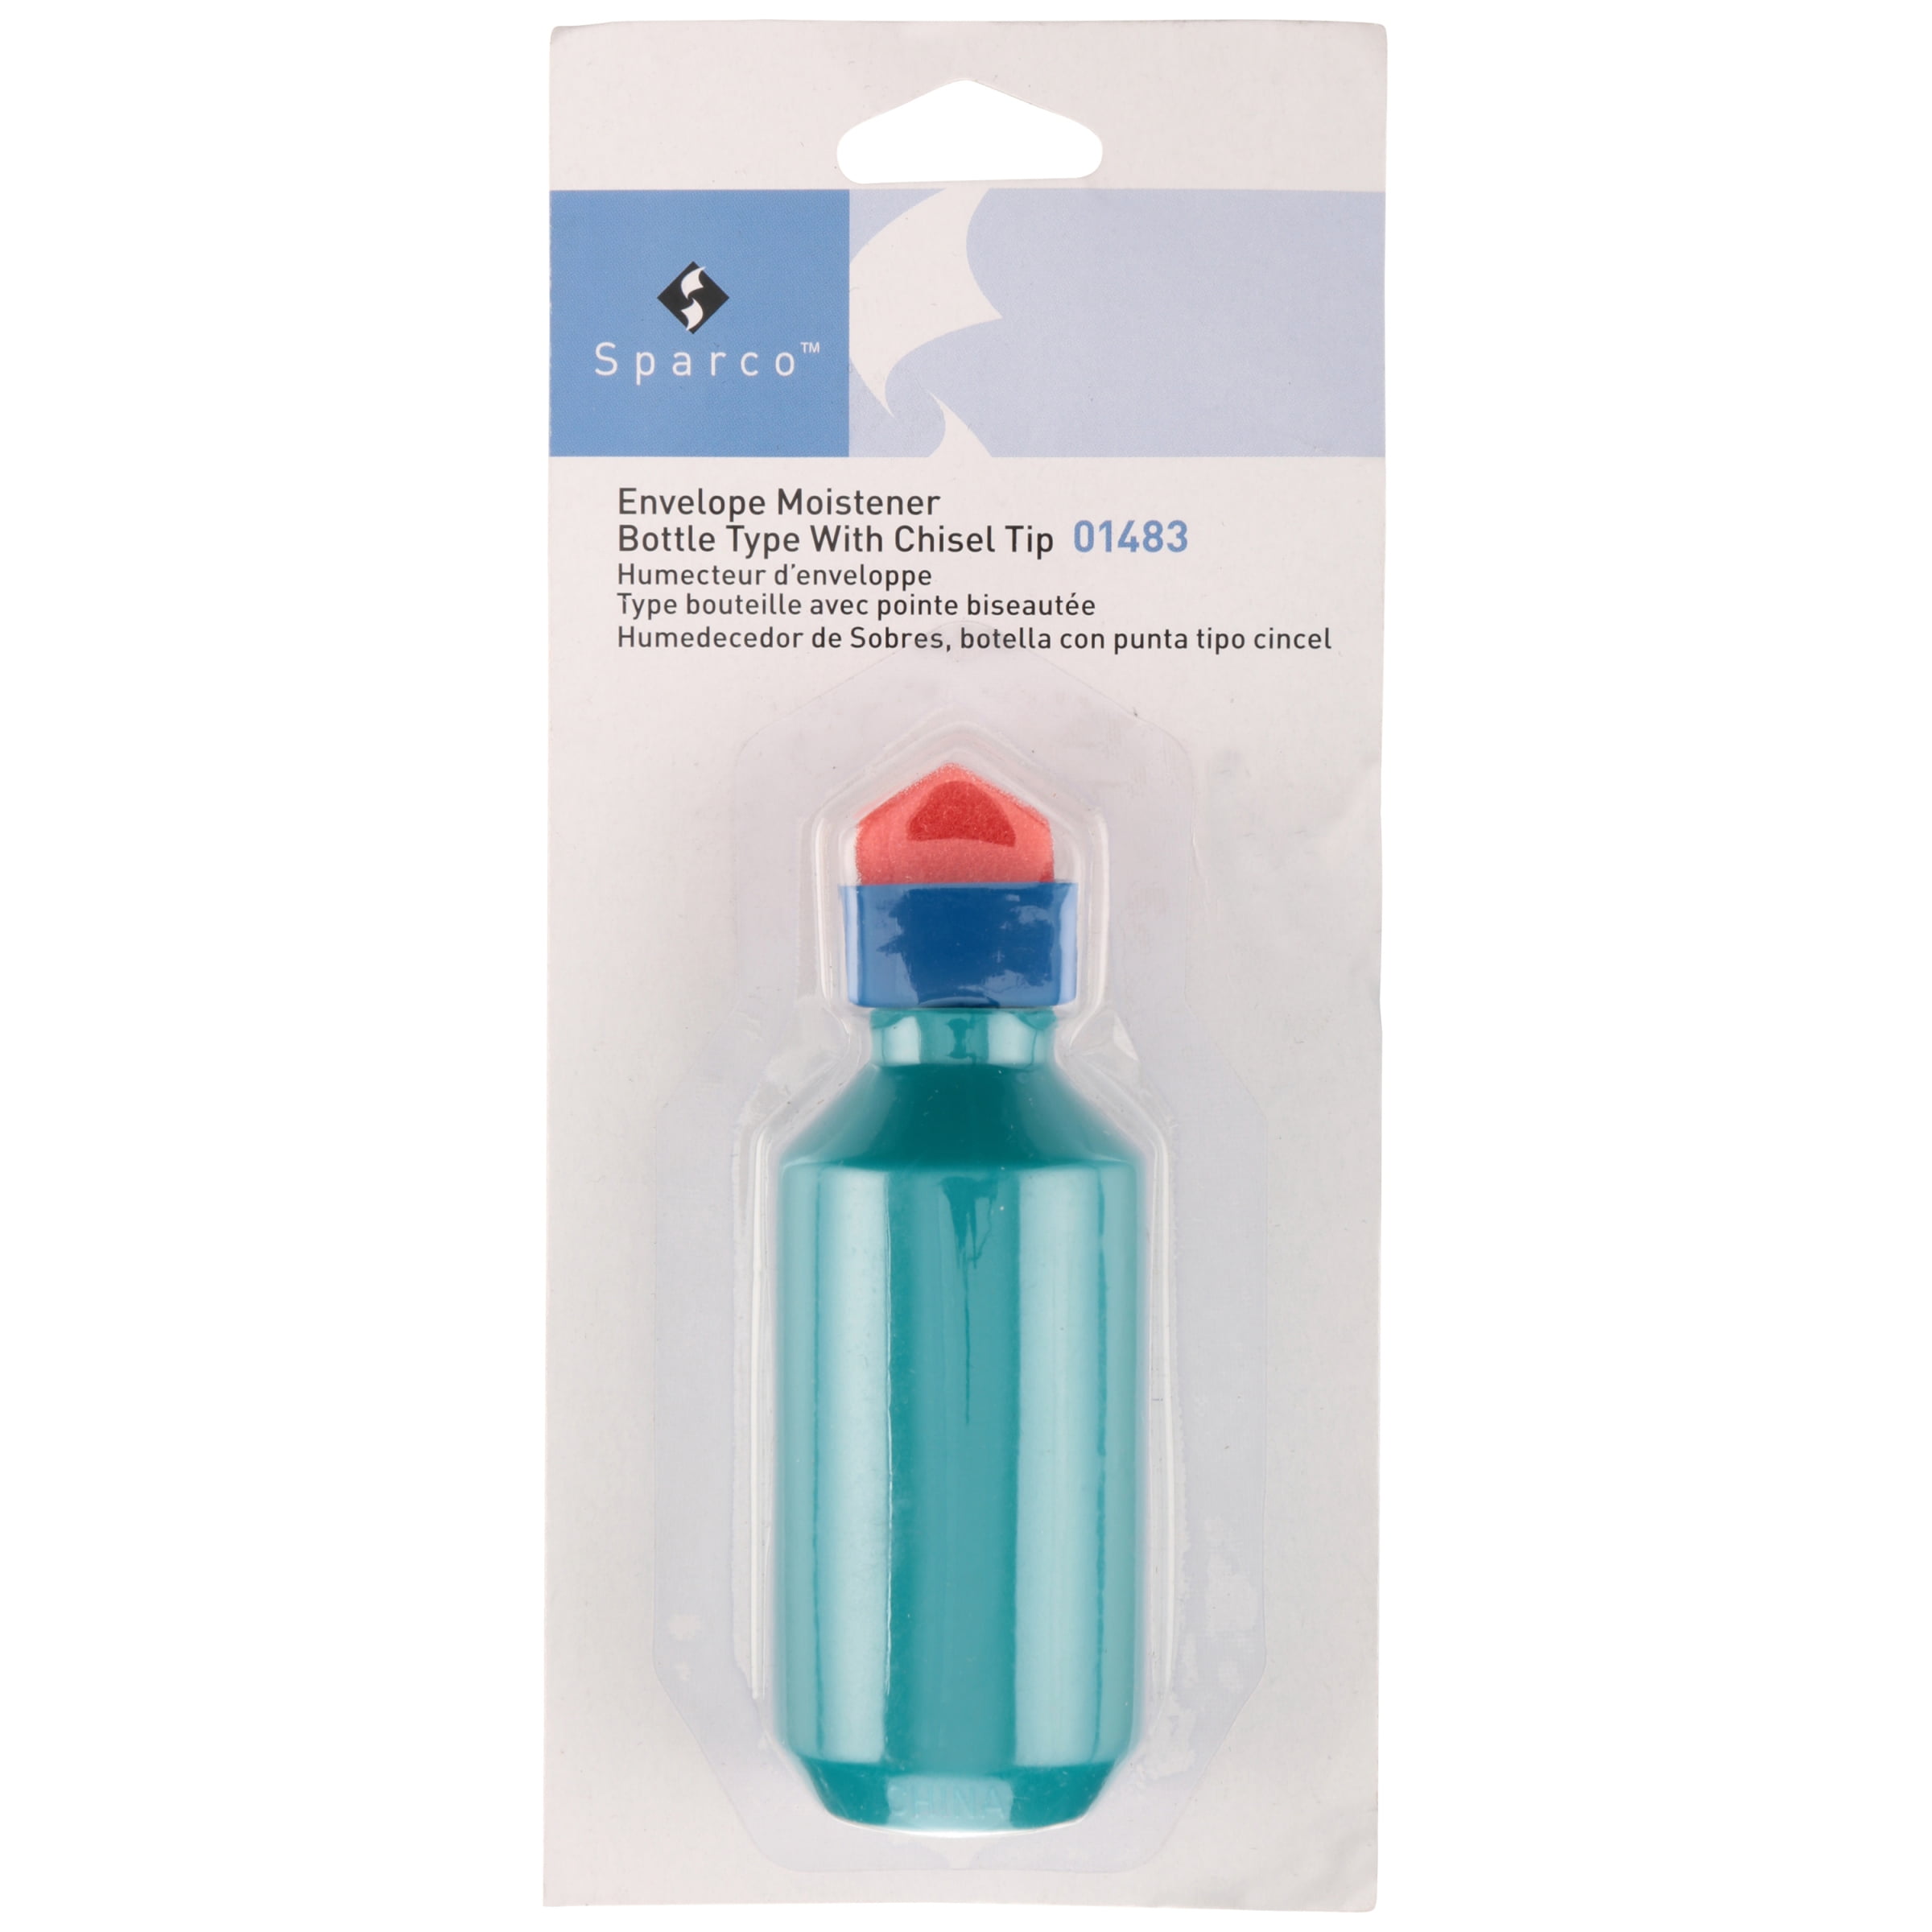 Sparco Envelope Moistener Bottle Type Sponge Tipped Spr01483 2 Packs